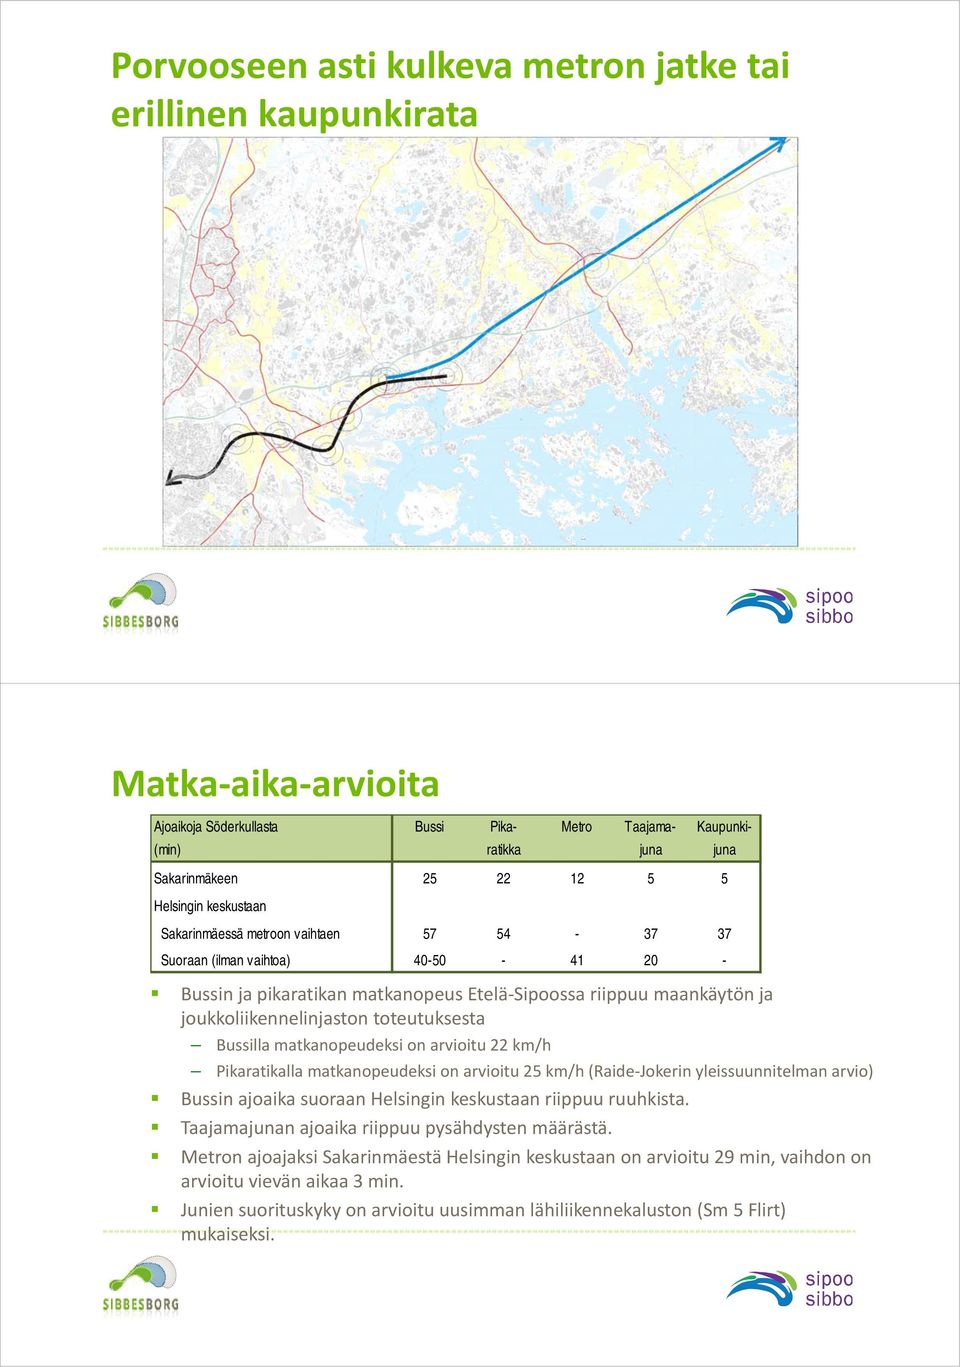 toteutuksesta Bussilla matkanopeudeksi on arvioitu 22 km/h Pikaratikalla matkanopeudeksi on arvioitu 25 km/h (Raide Jokerin yleissuunnitelman arvio) Bussin ajoaika suoraan Helsingin keskustaan